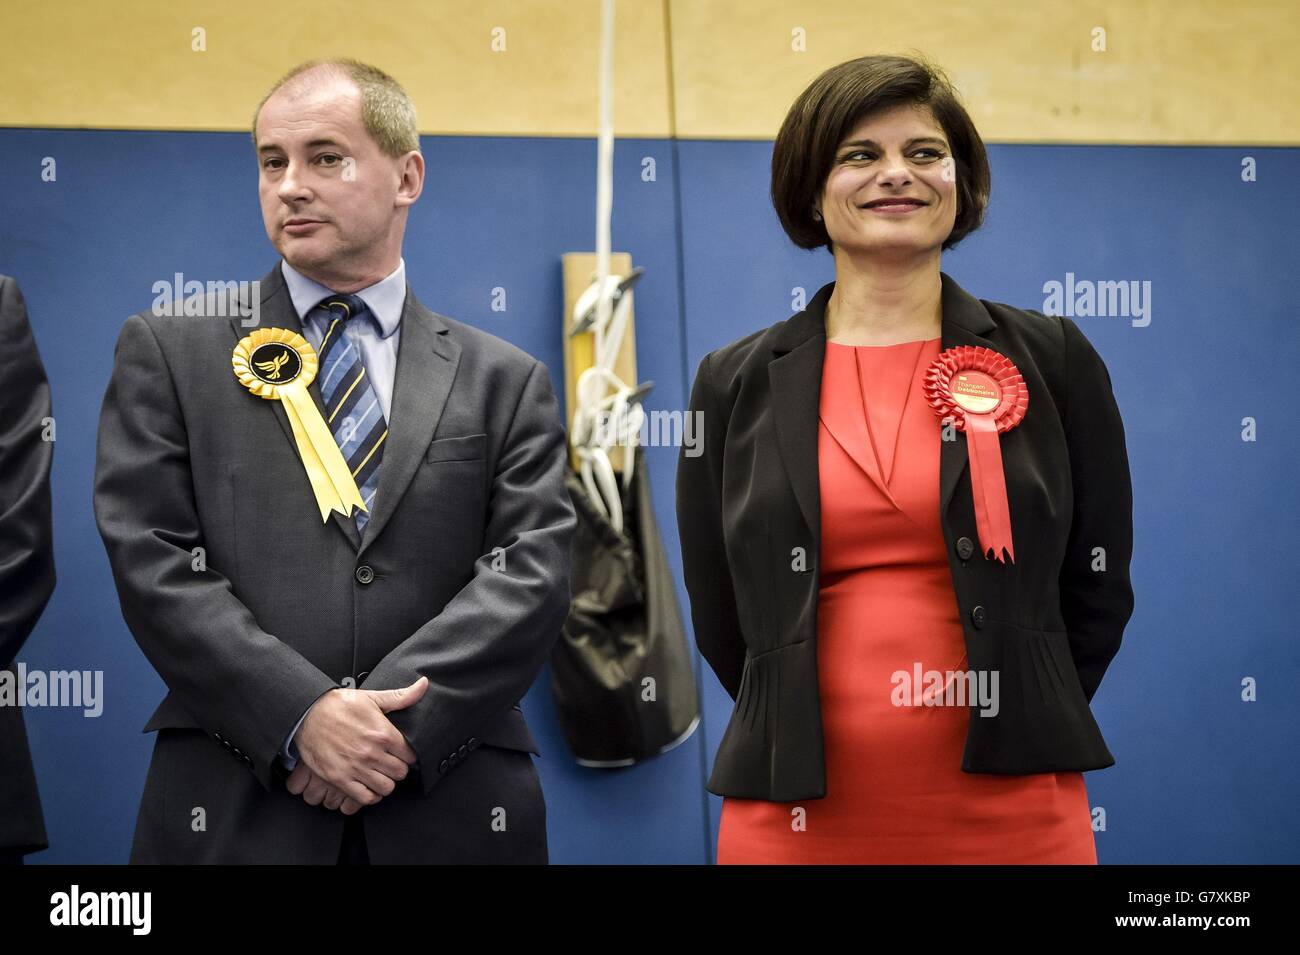 Der Kandidat des liberalen Demokraten Stephen Williams steht neben seinem Rivalen für den Sitz in Bristol West, da der Labour-Abgeordnete Thangam Debbonaire den Sitz bei der Parlamentswahl 2015 an der City Academy Bristol gewinnt. Stockfoto